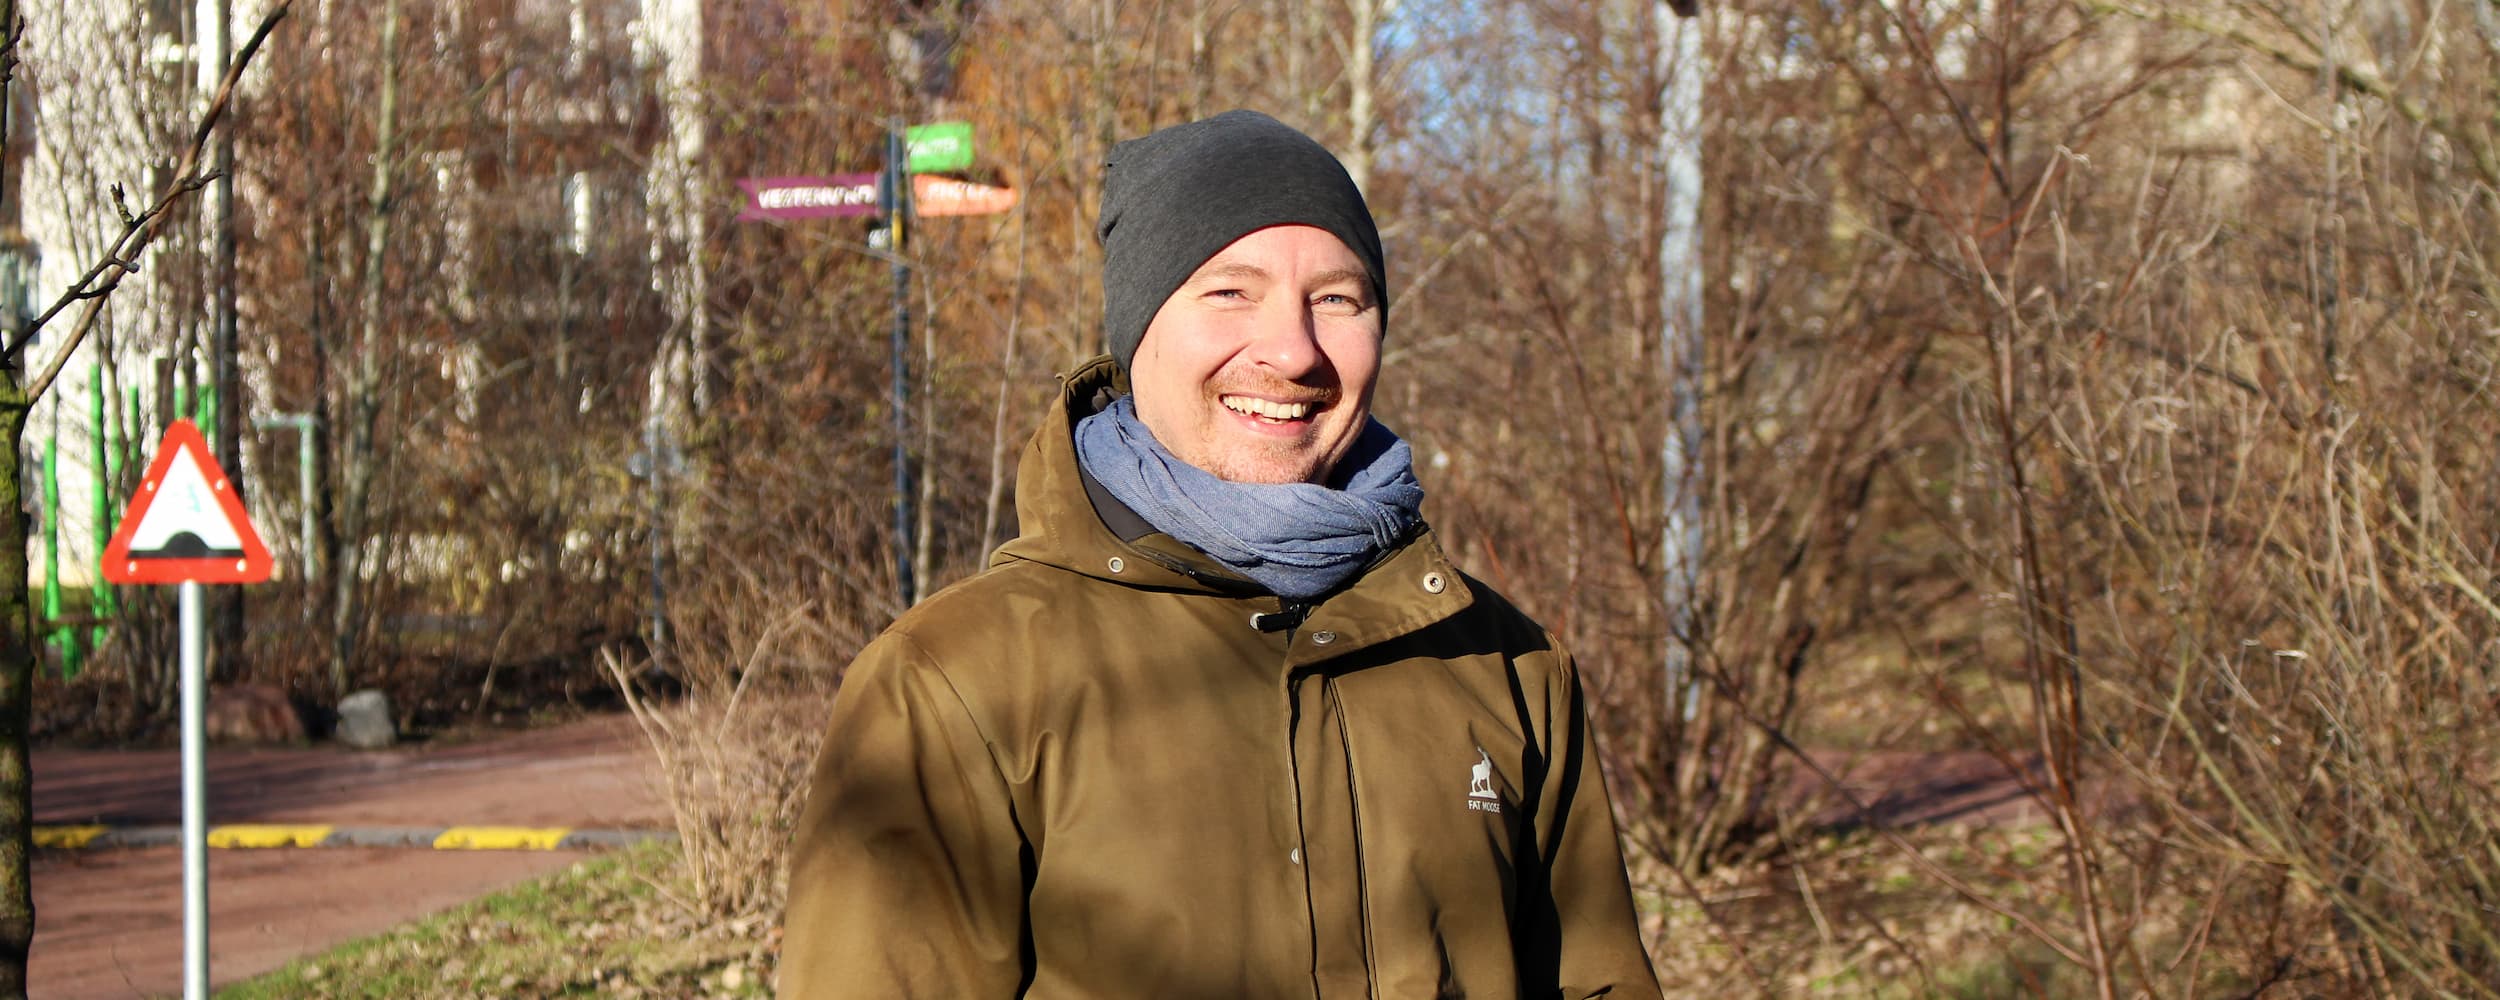 Jakob Nagstrup Jensen er ansat i Grundejerforeningssekretariatet som Driftsansvarlig. Jakob har ansvaret for drift og vedligehold på tværs af grundejerforeningernes arealer - lige fra veje, parker, legepladser og boldbaner til koordinering af biodiversitetstiltag, snerydning og tømning af skraldespande.